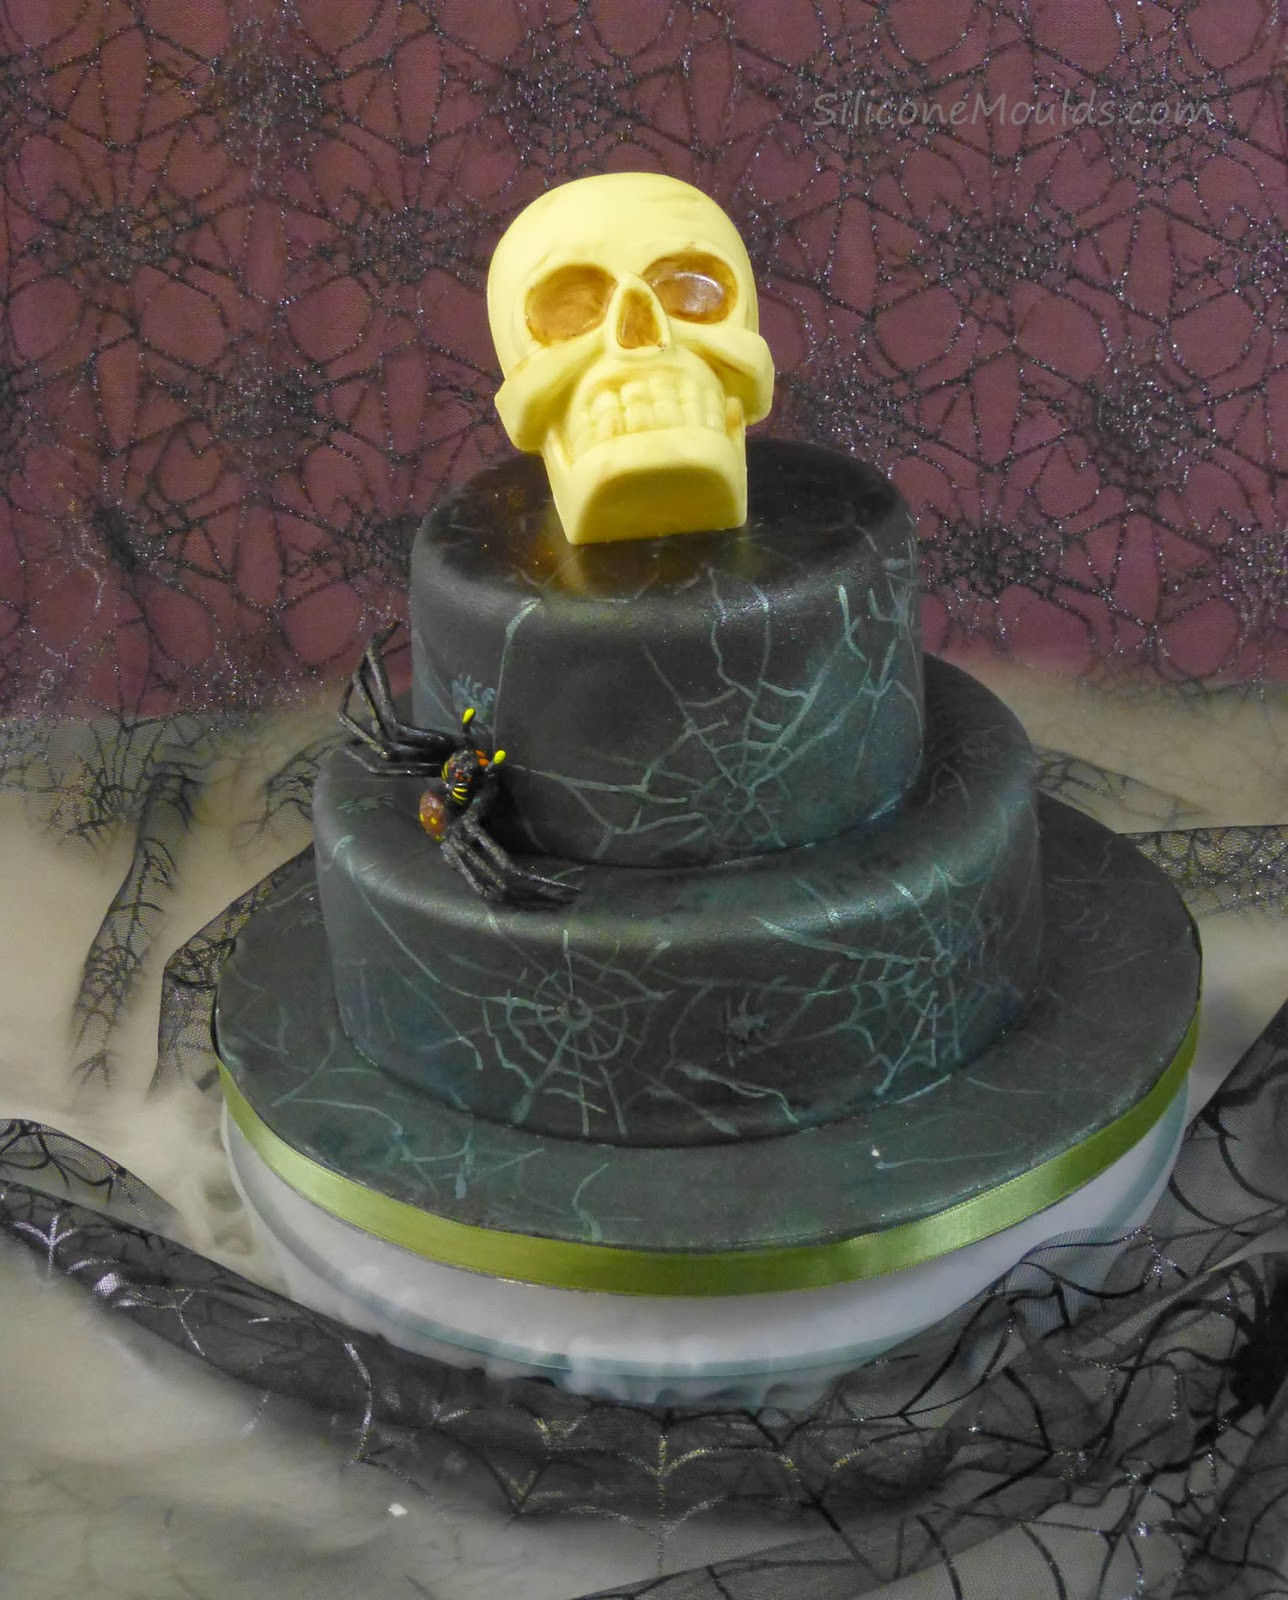 Skull Birthday Cake
 SiliconeMoulds Blog Oliver s 5th Birthday Skull Cakes